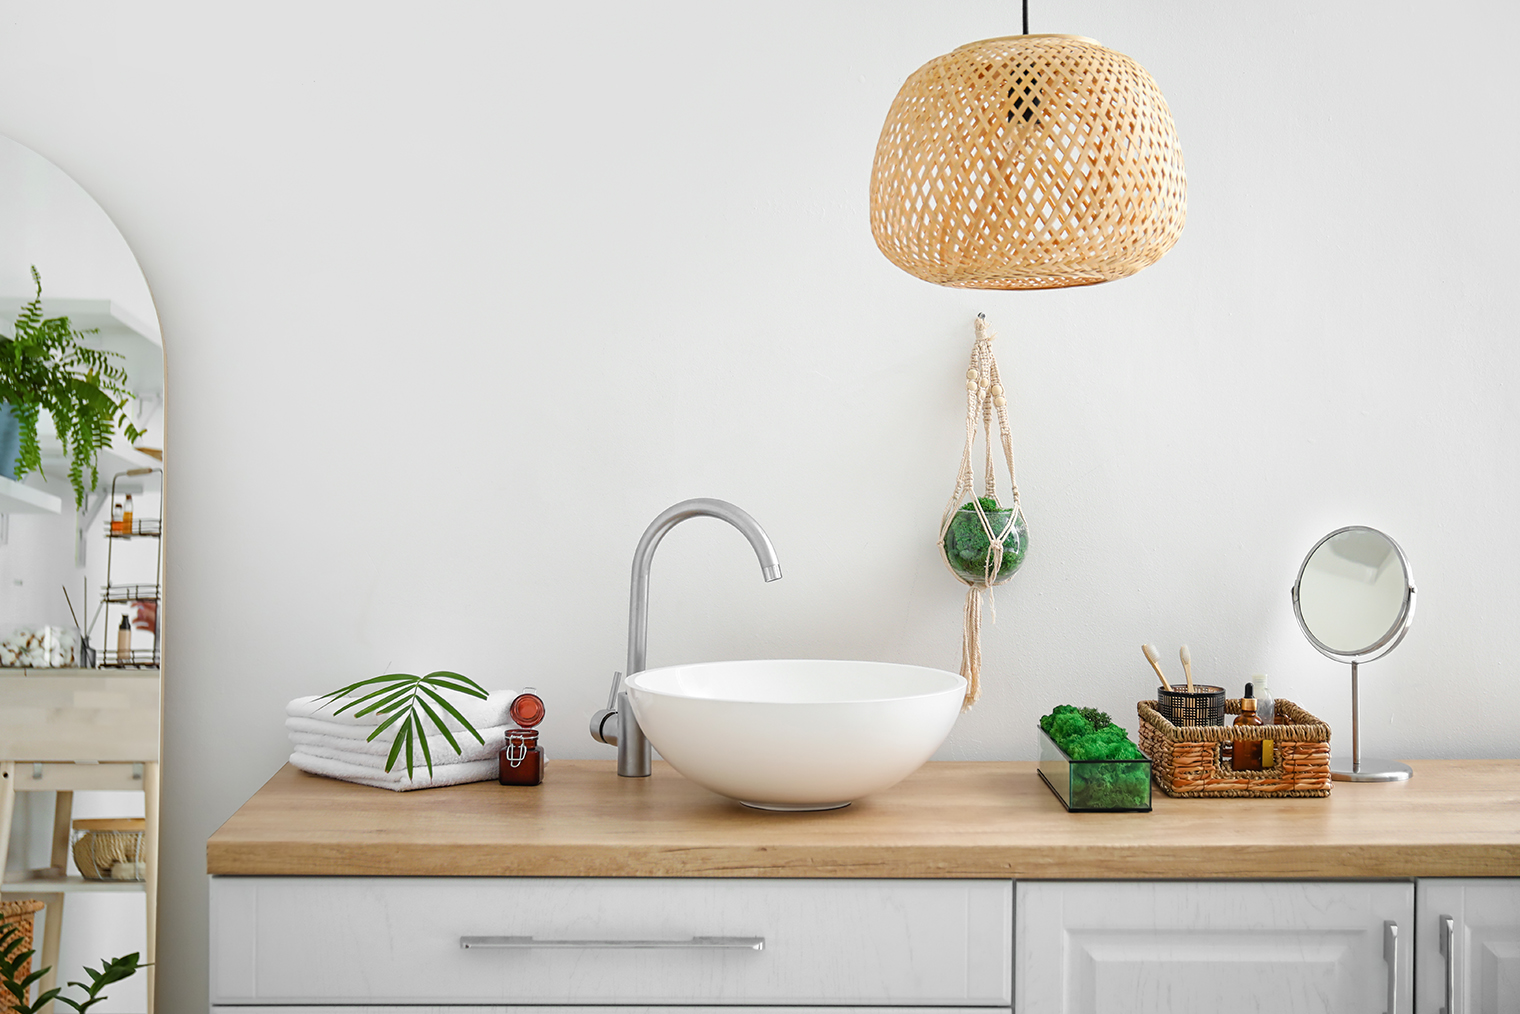 Добавьте в бохо⁠-⁠ванную плетеный декор. Фотография: Pixel⁠-⁠Shot / Shutterstock